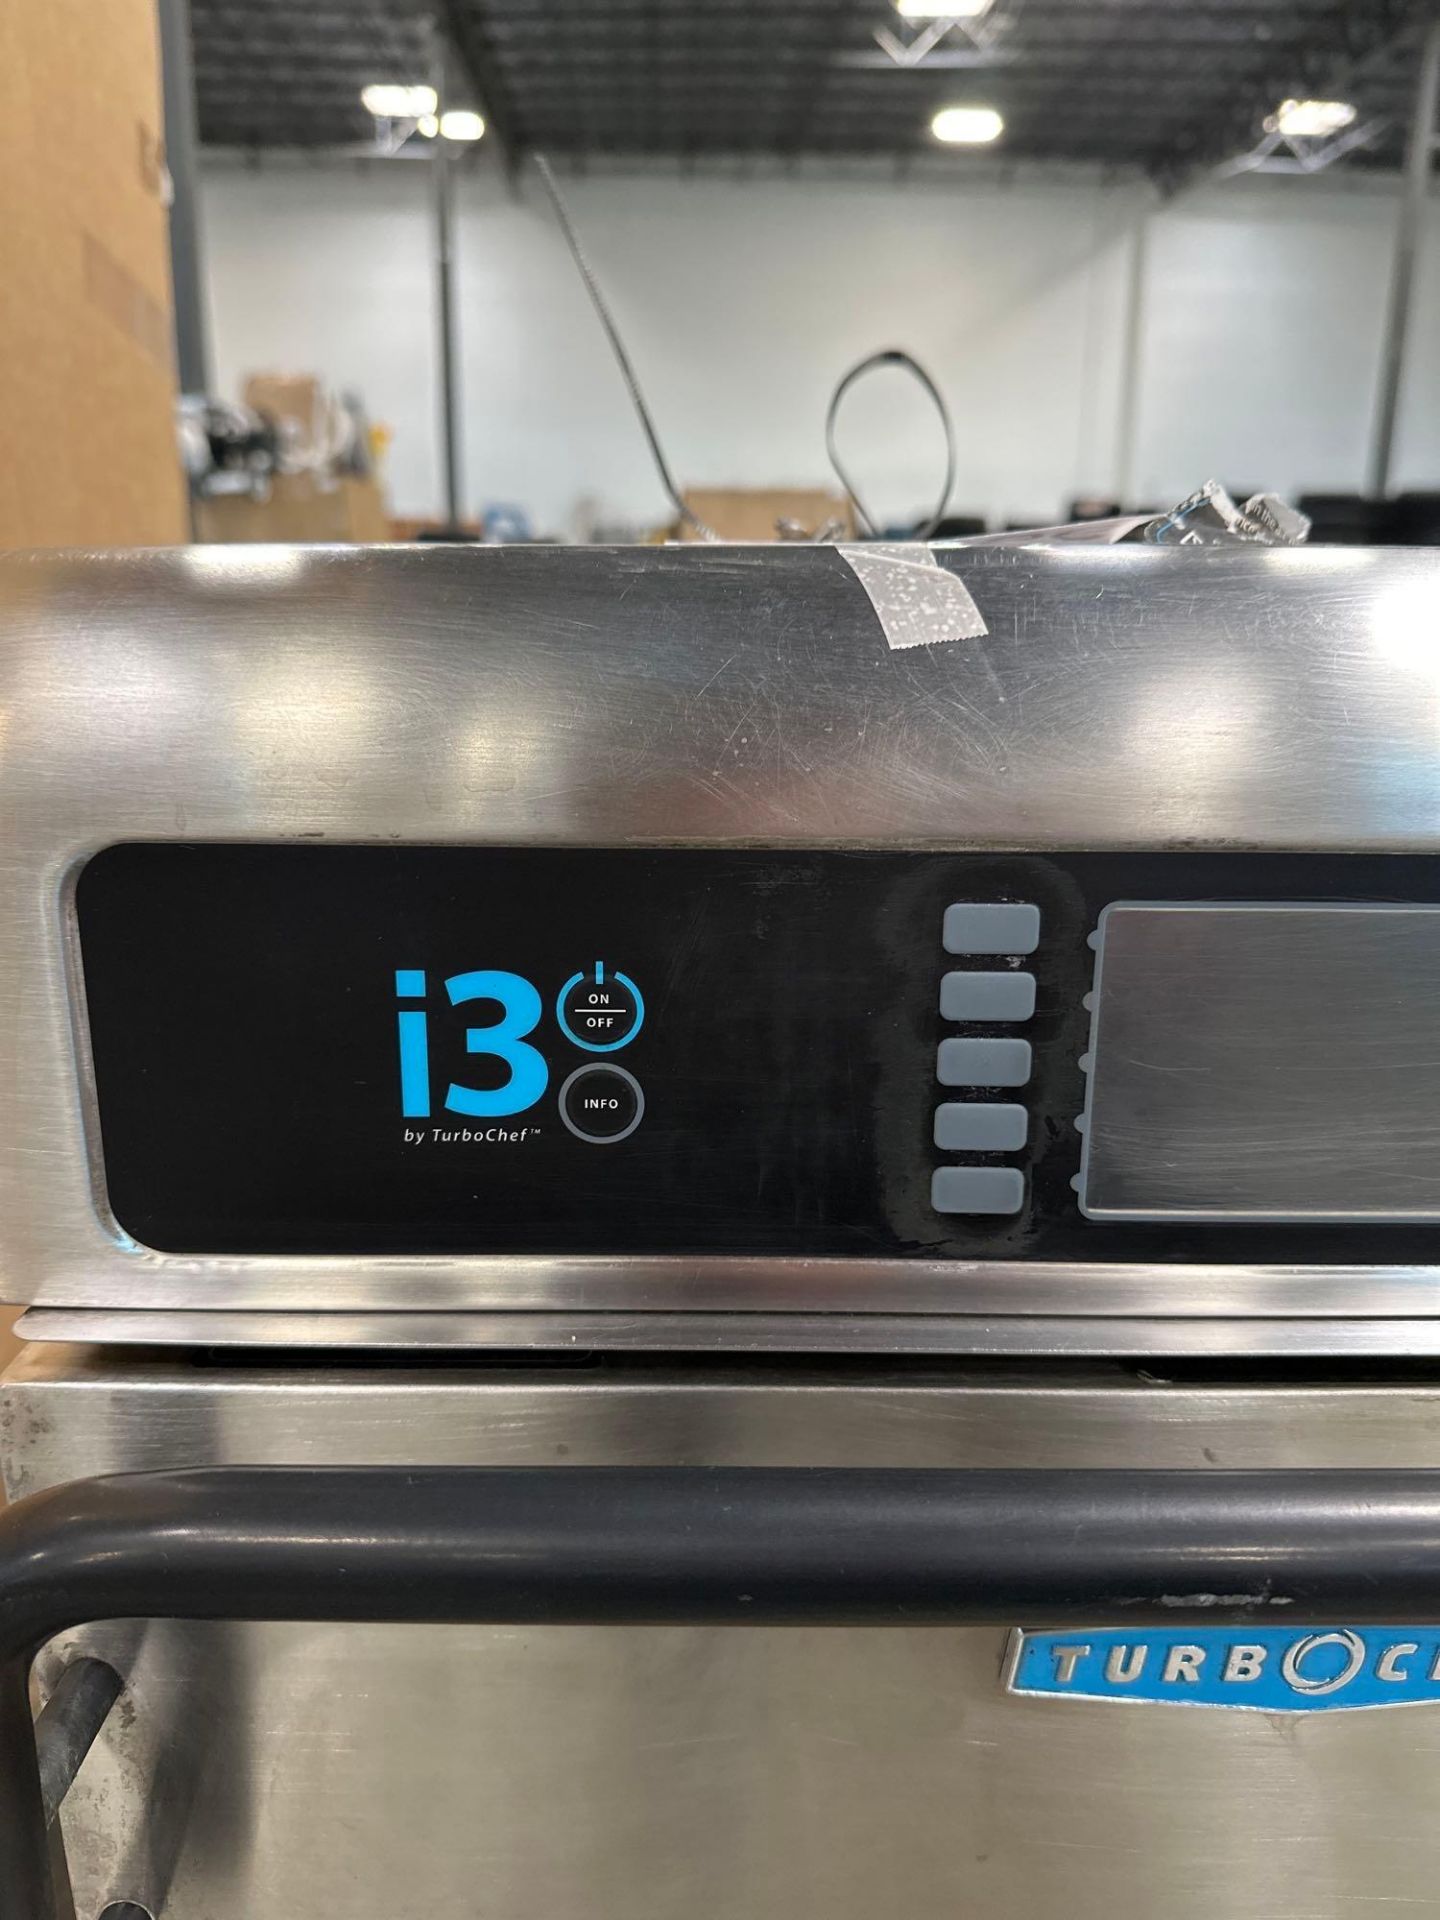 i3 TurboChef oven - Image 2 of 5